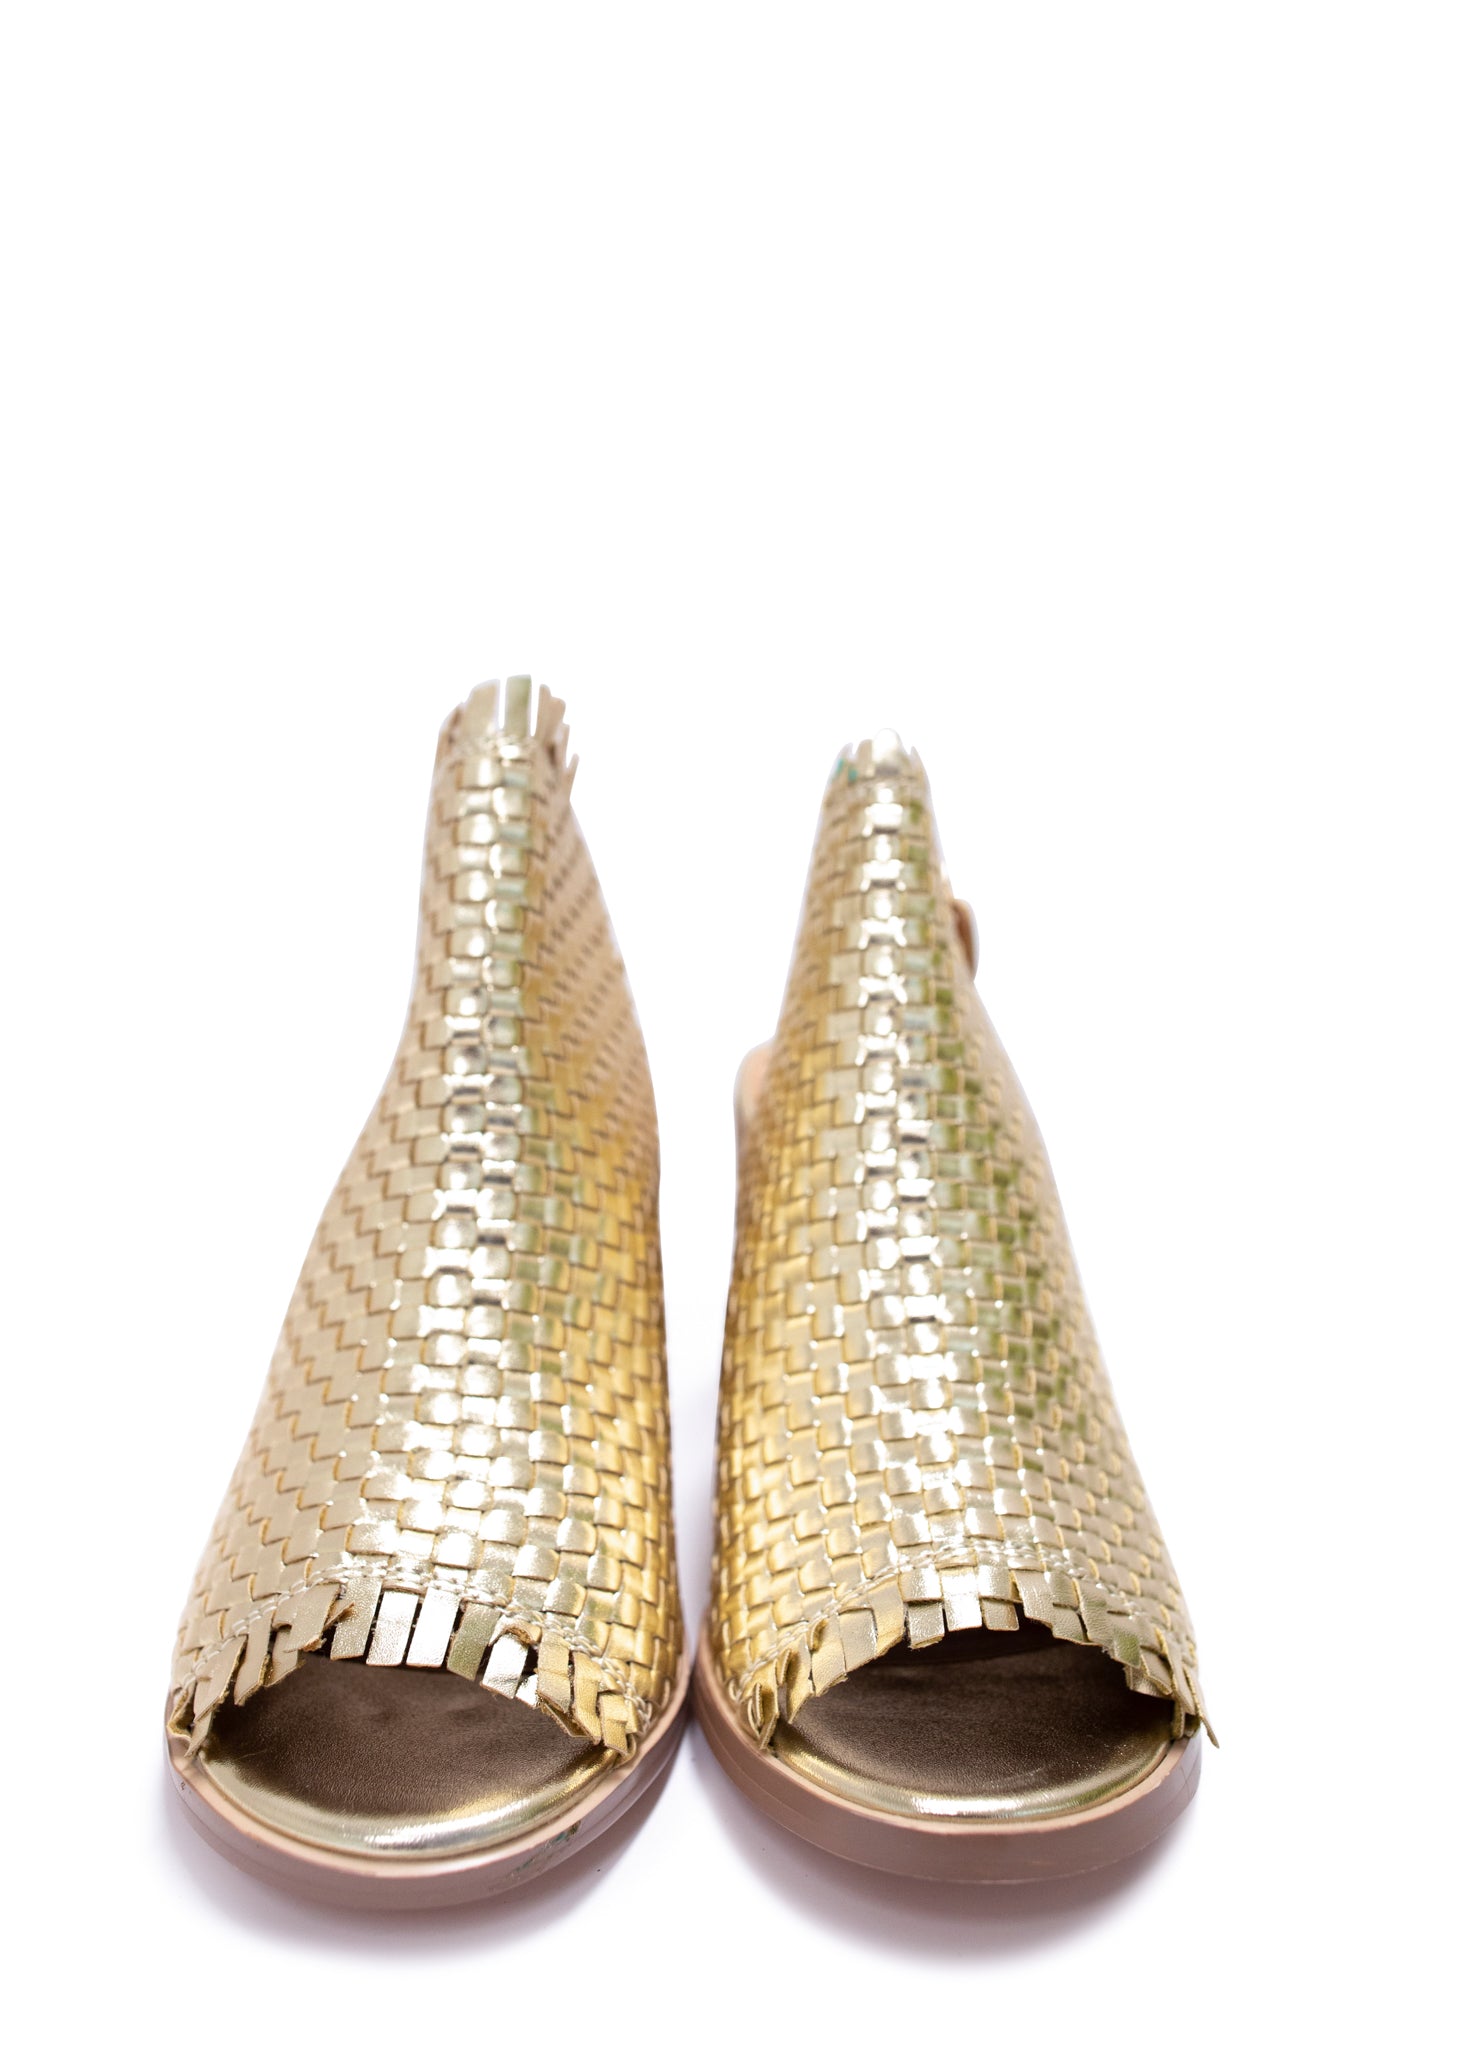 Starla Heeled Sandal in Metallic Gold